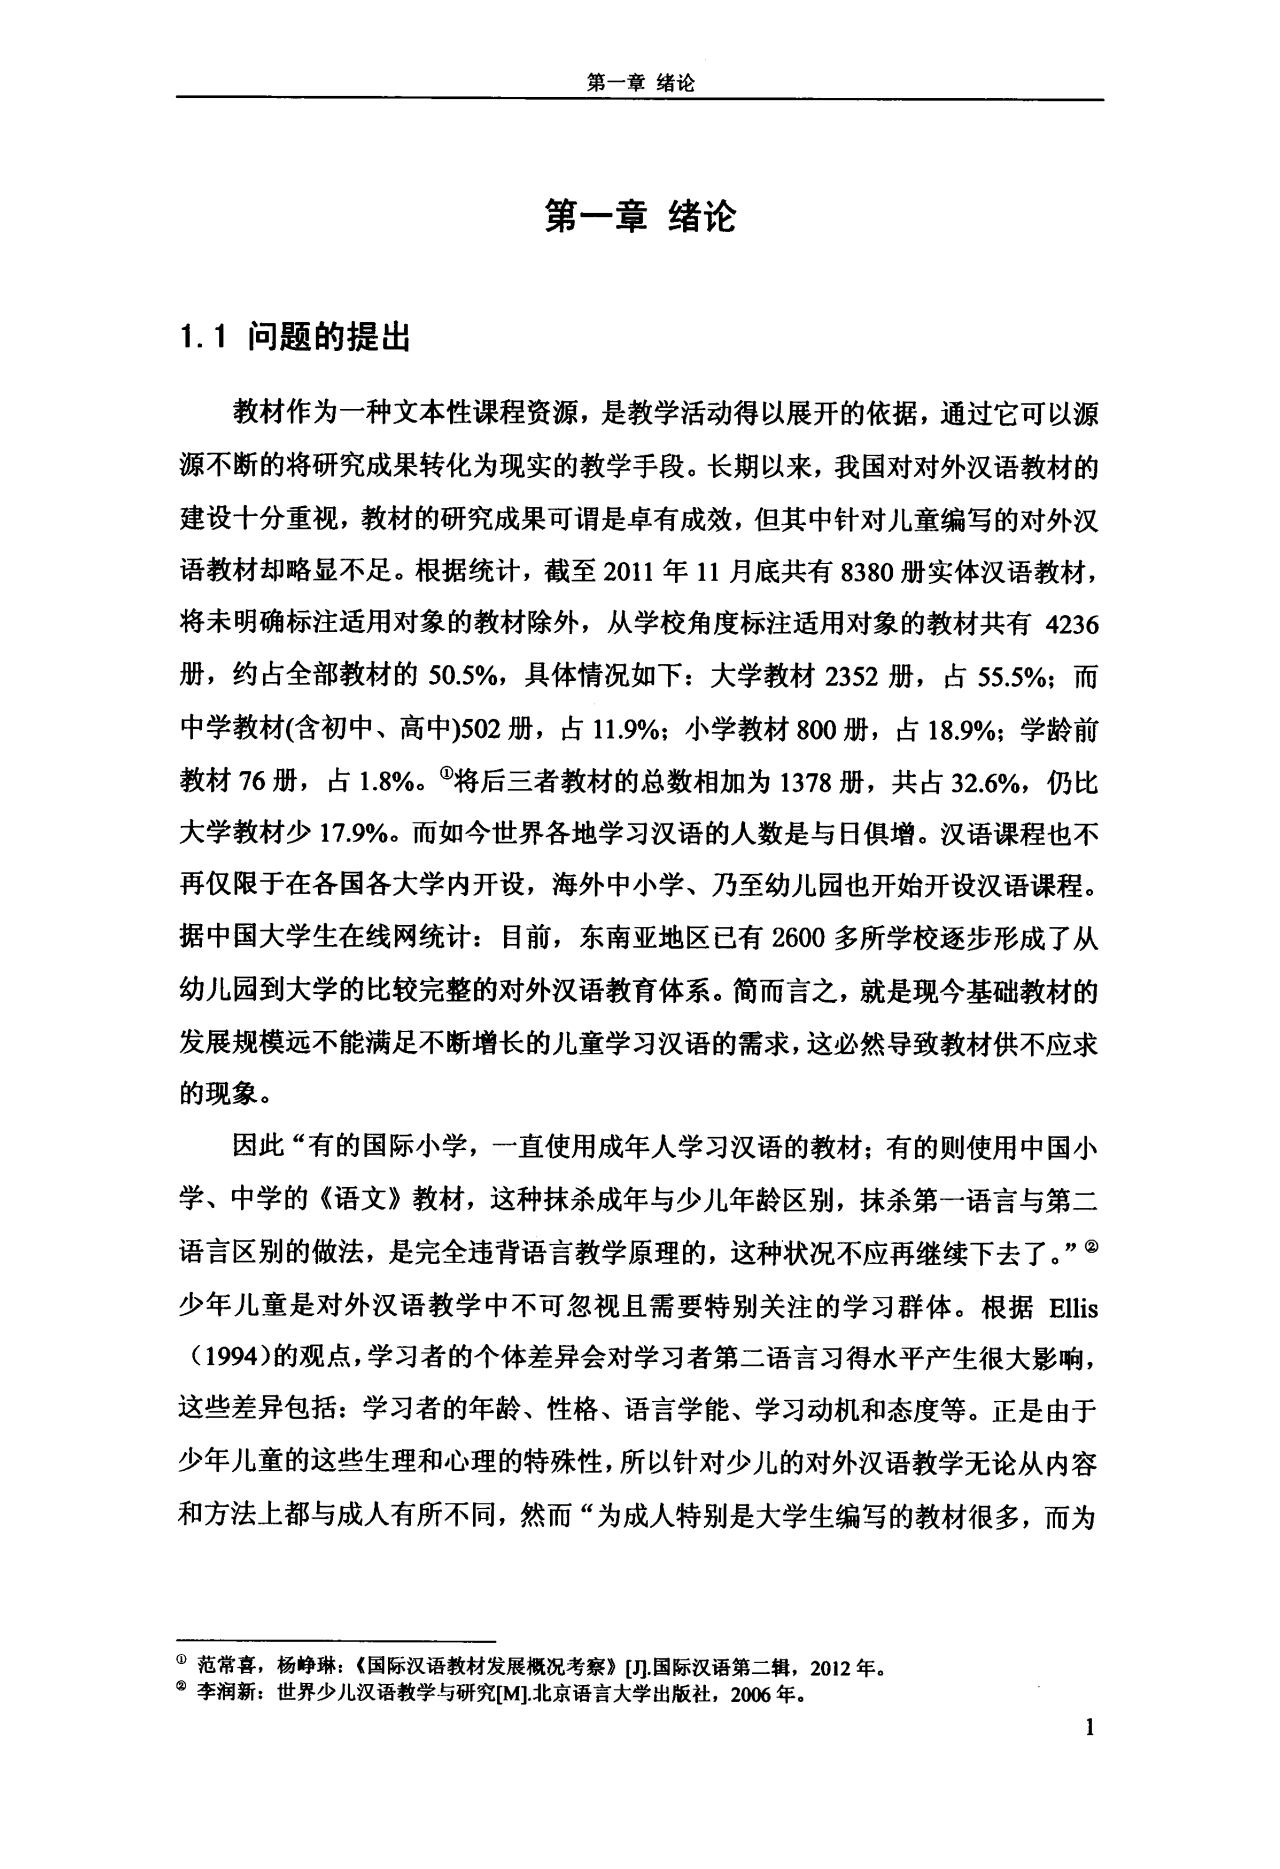 少儿对外汉语教材的编写比较分析——以《中文》和《汉语》为例